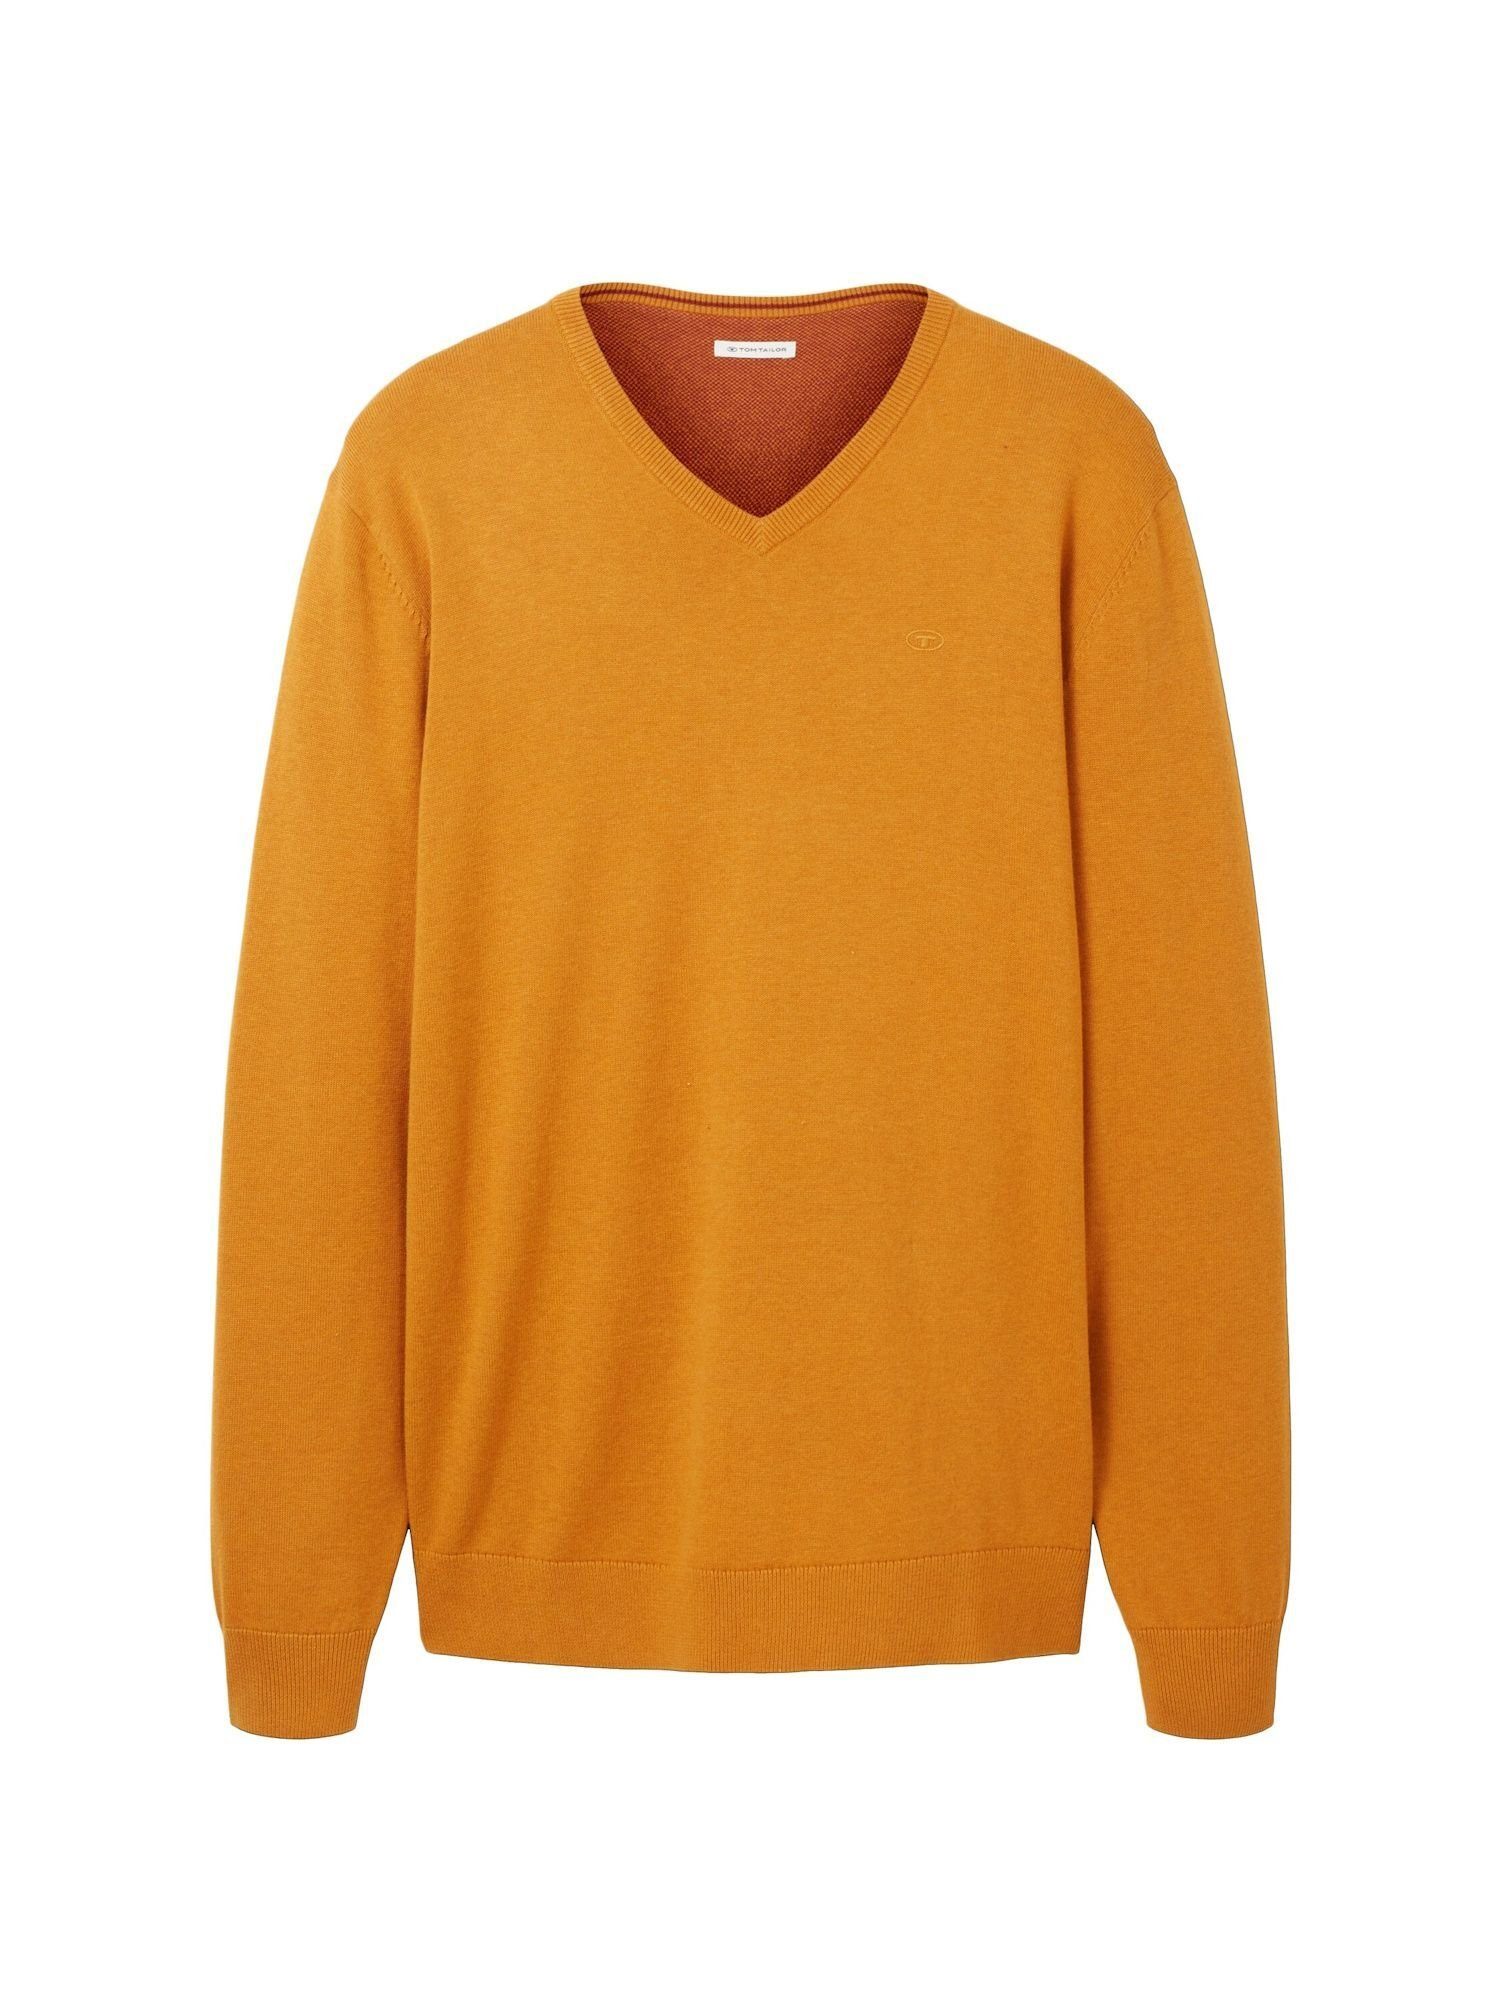 Pullover Sweatshirt TAILOR Sweatshirt orange meliert Rippbündchen (1-tlg) TOM mit